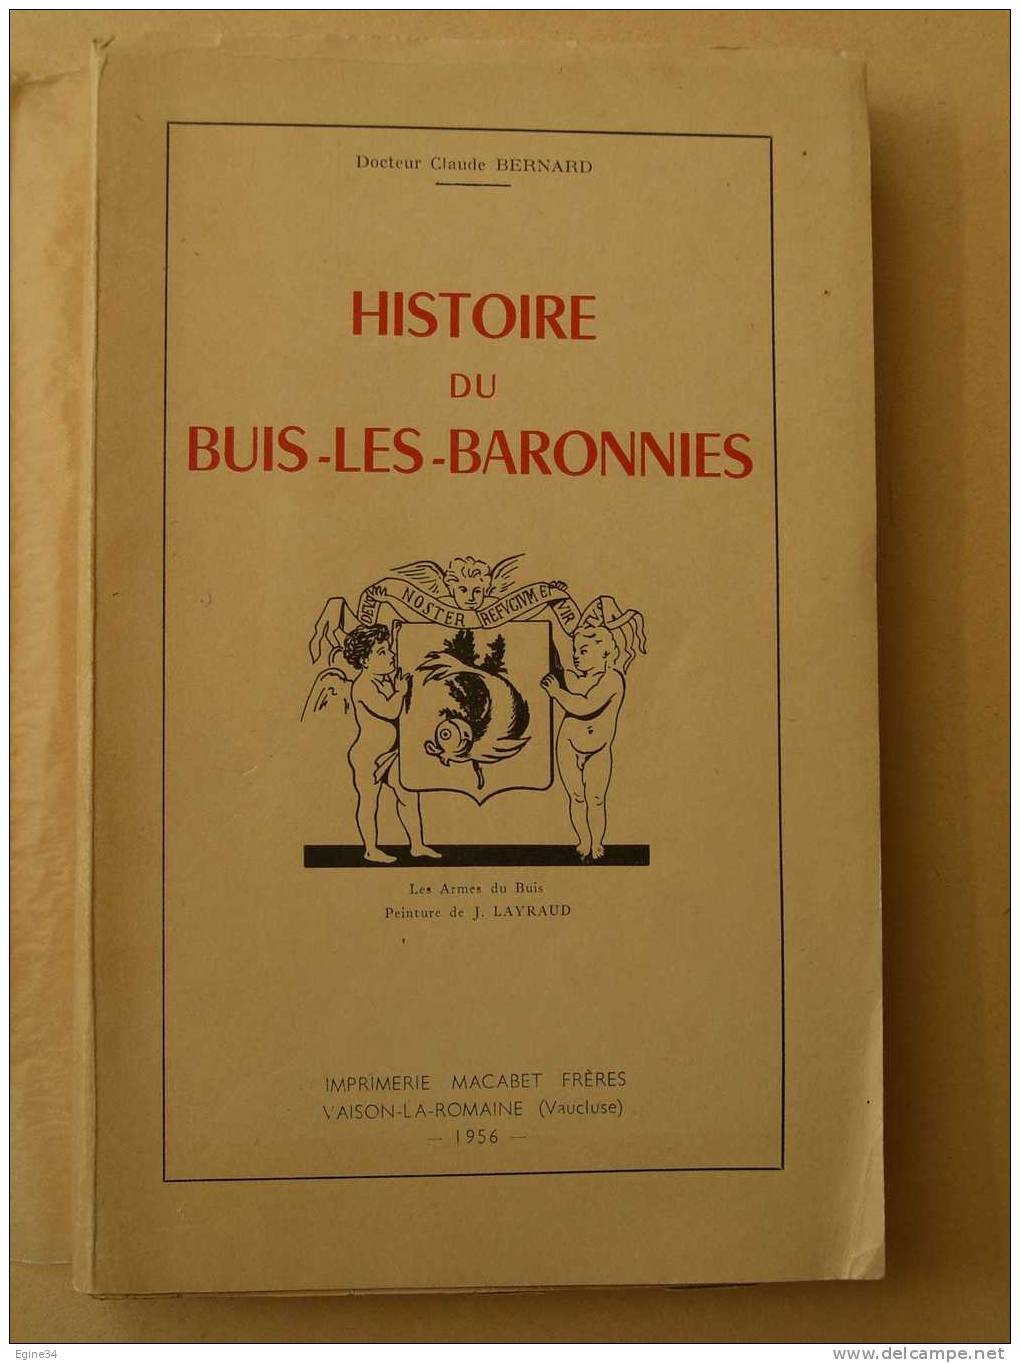 DROME  -  Docteur Claude BERNARD  -  HISTOIRE DU BUIS LES BARONNIES - - Rhône-Alpes